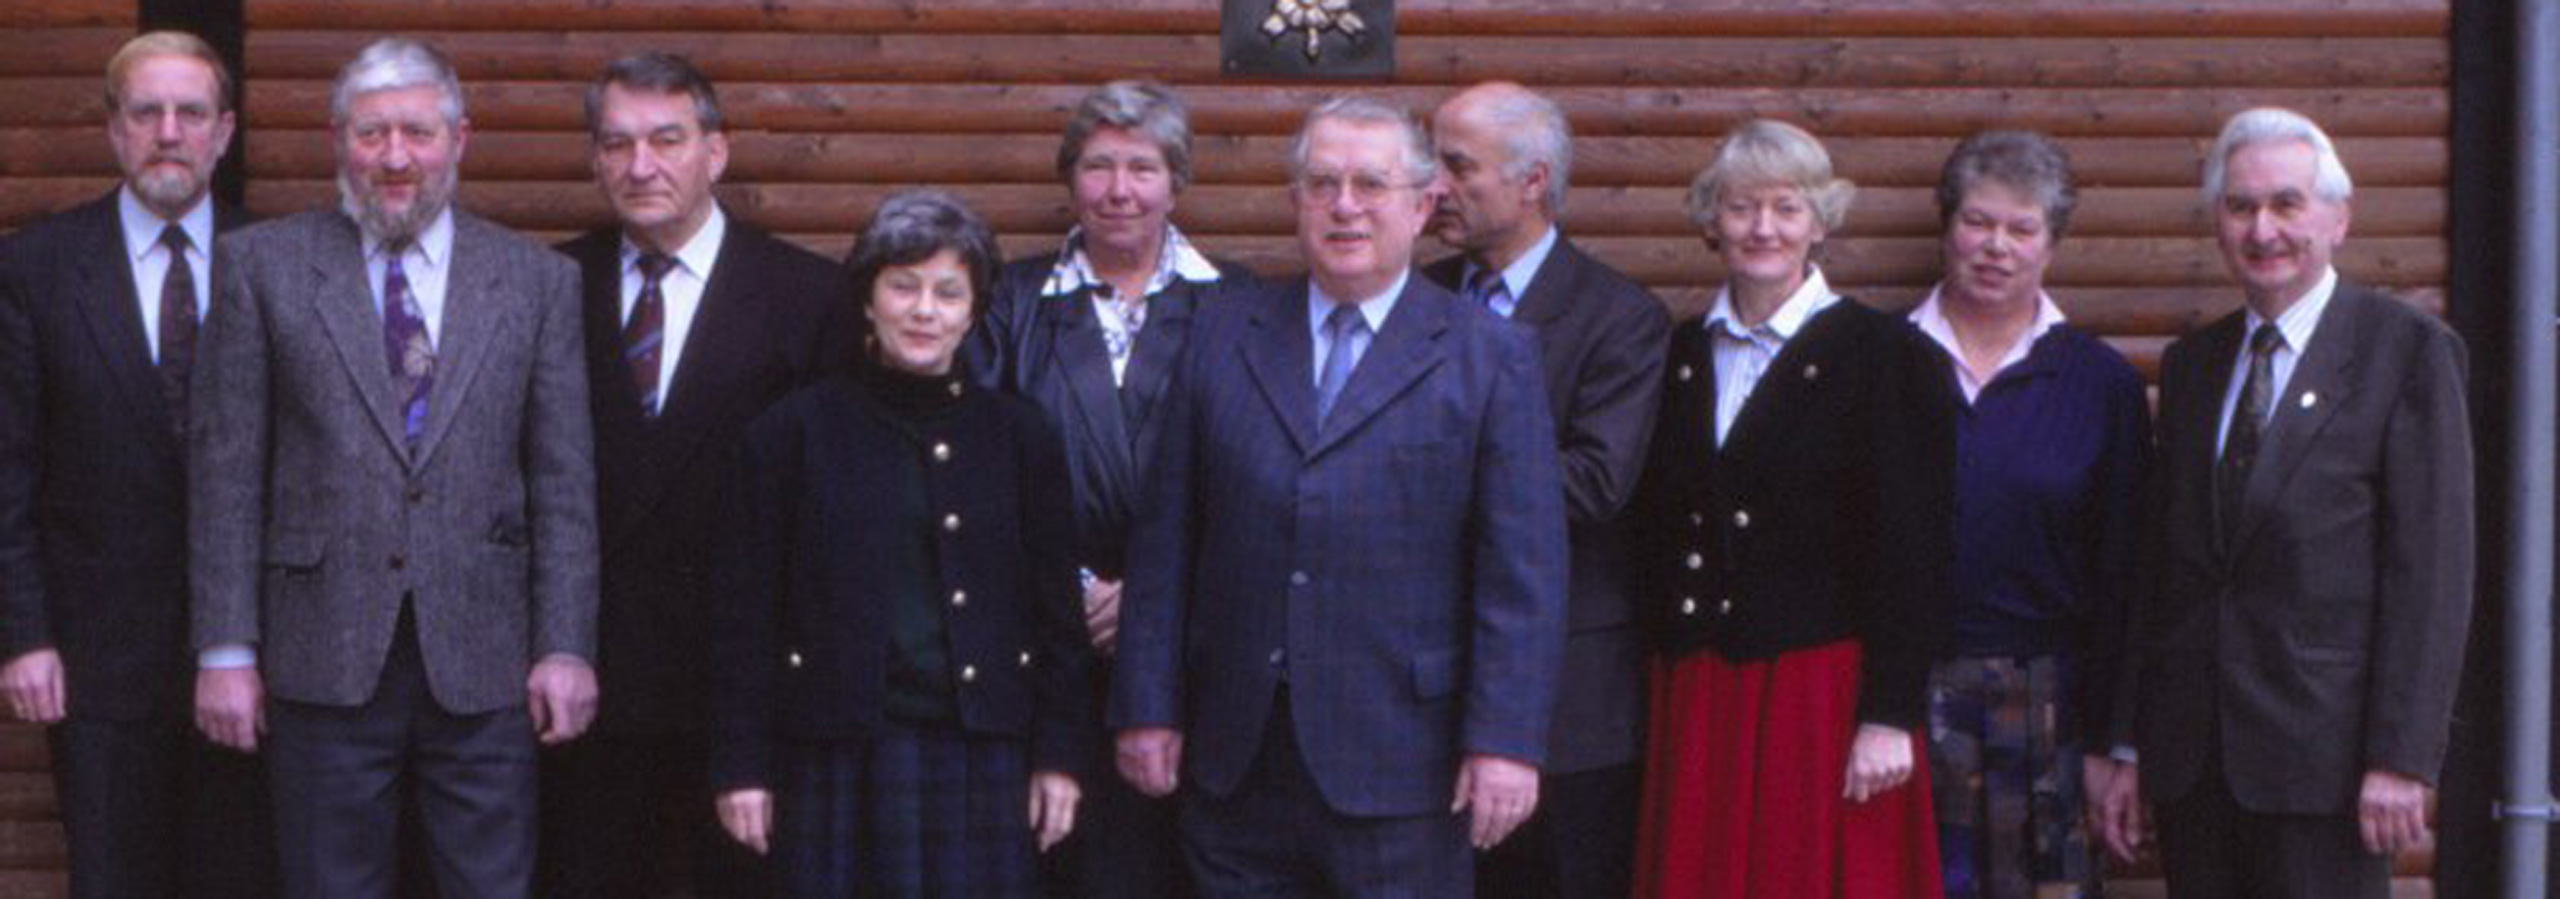 Der Vorstand 1991 der SGV Abteilung Hilchenbach